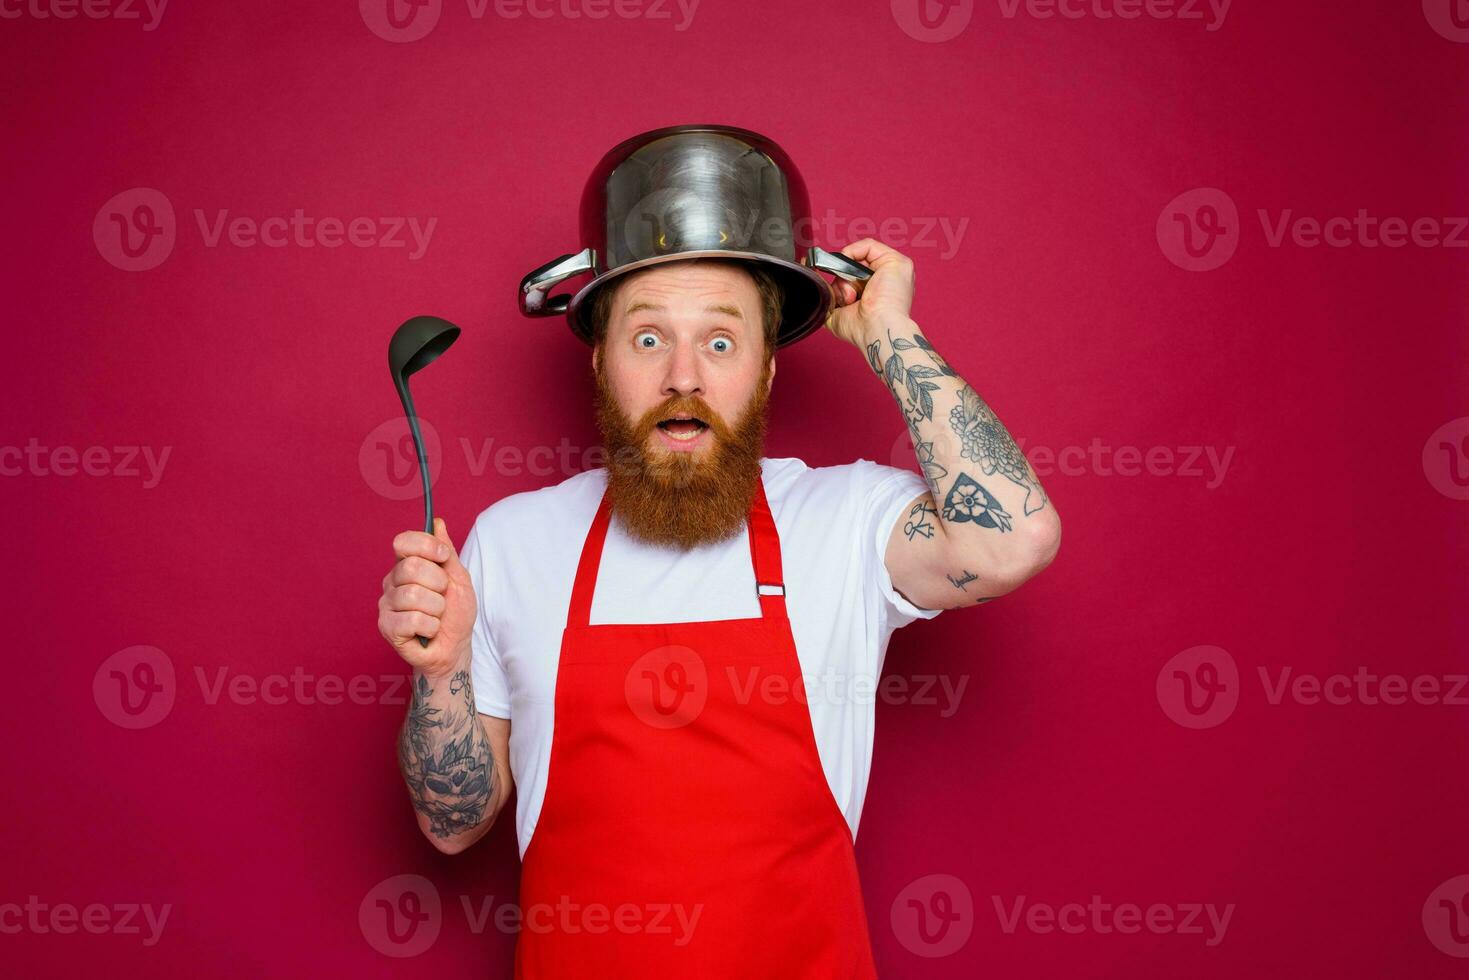 asombrado cocinero con barba y rojo delantal obras de teatro con maceta foto